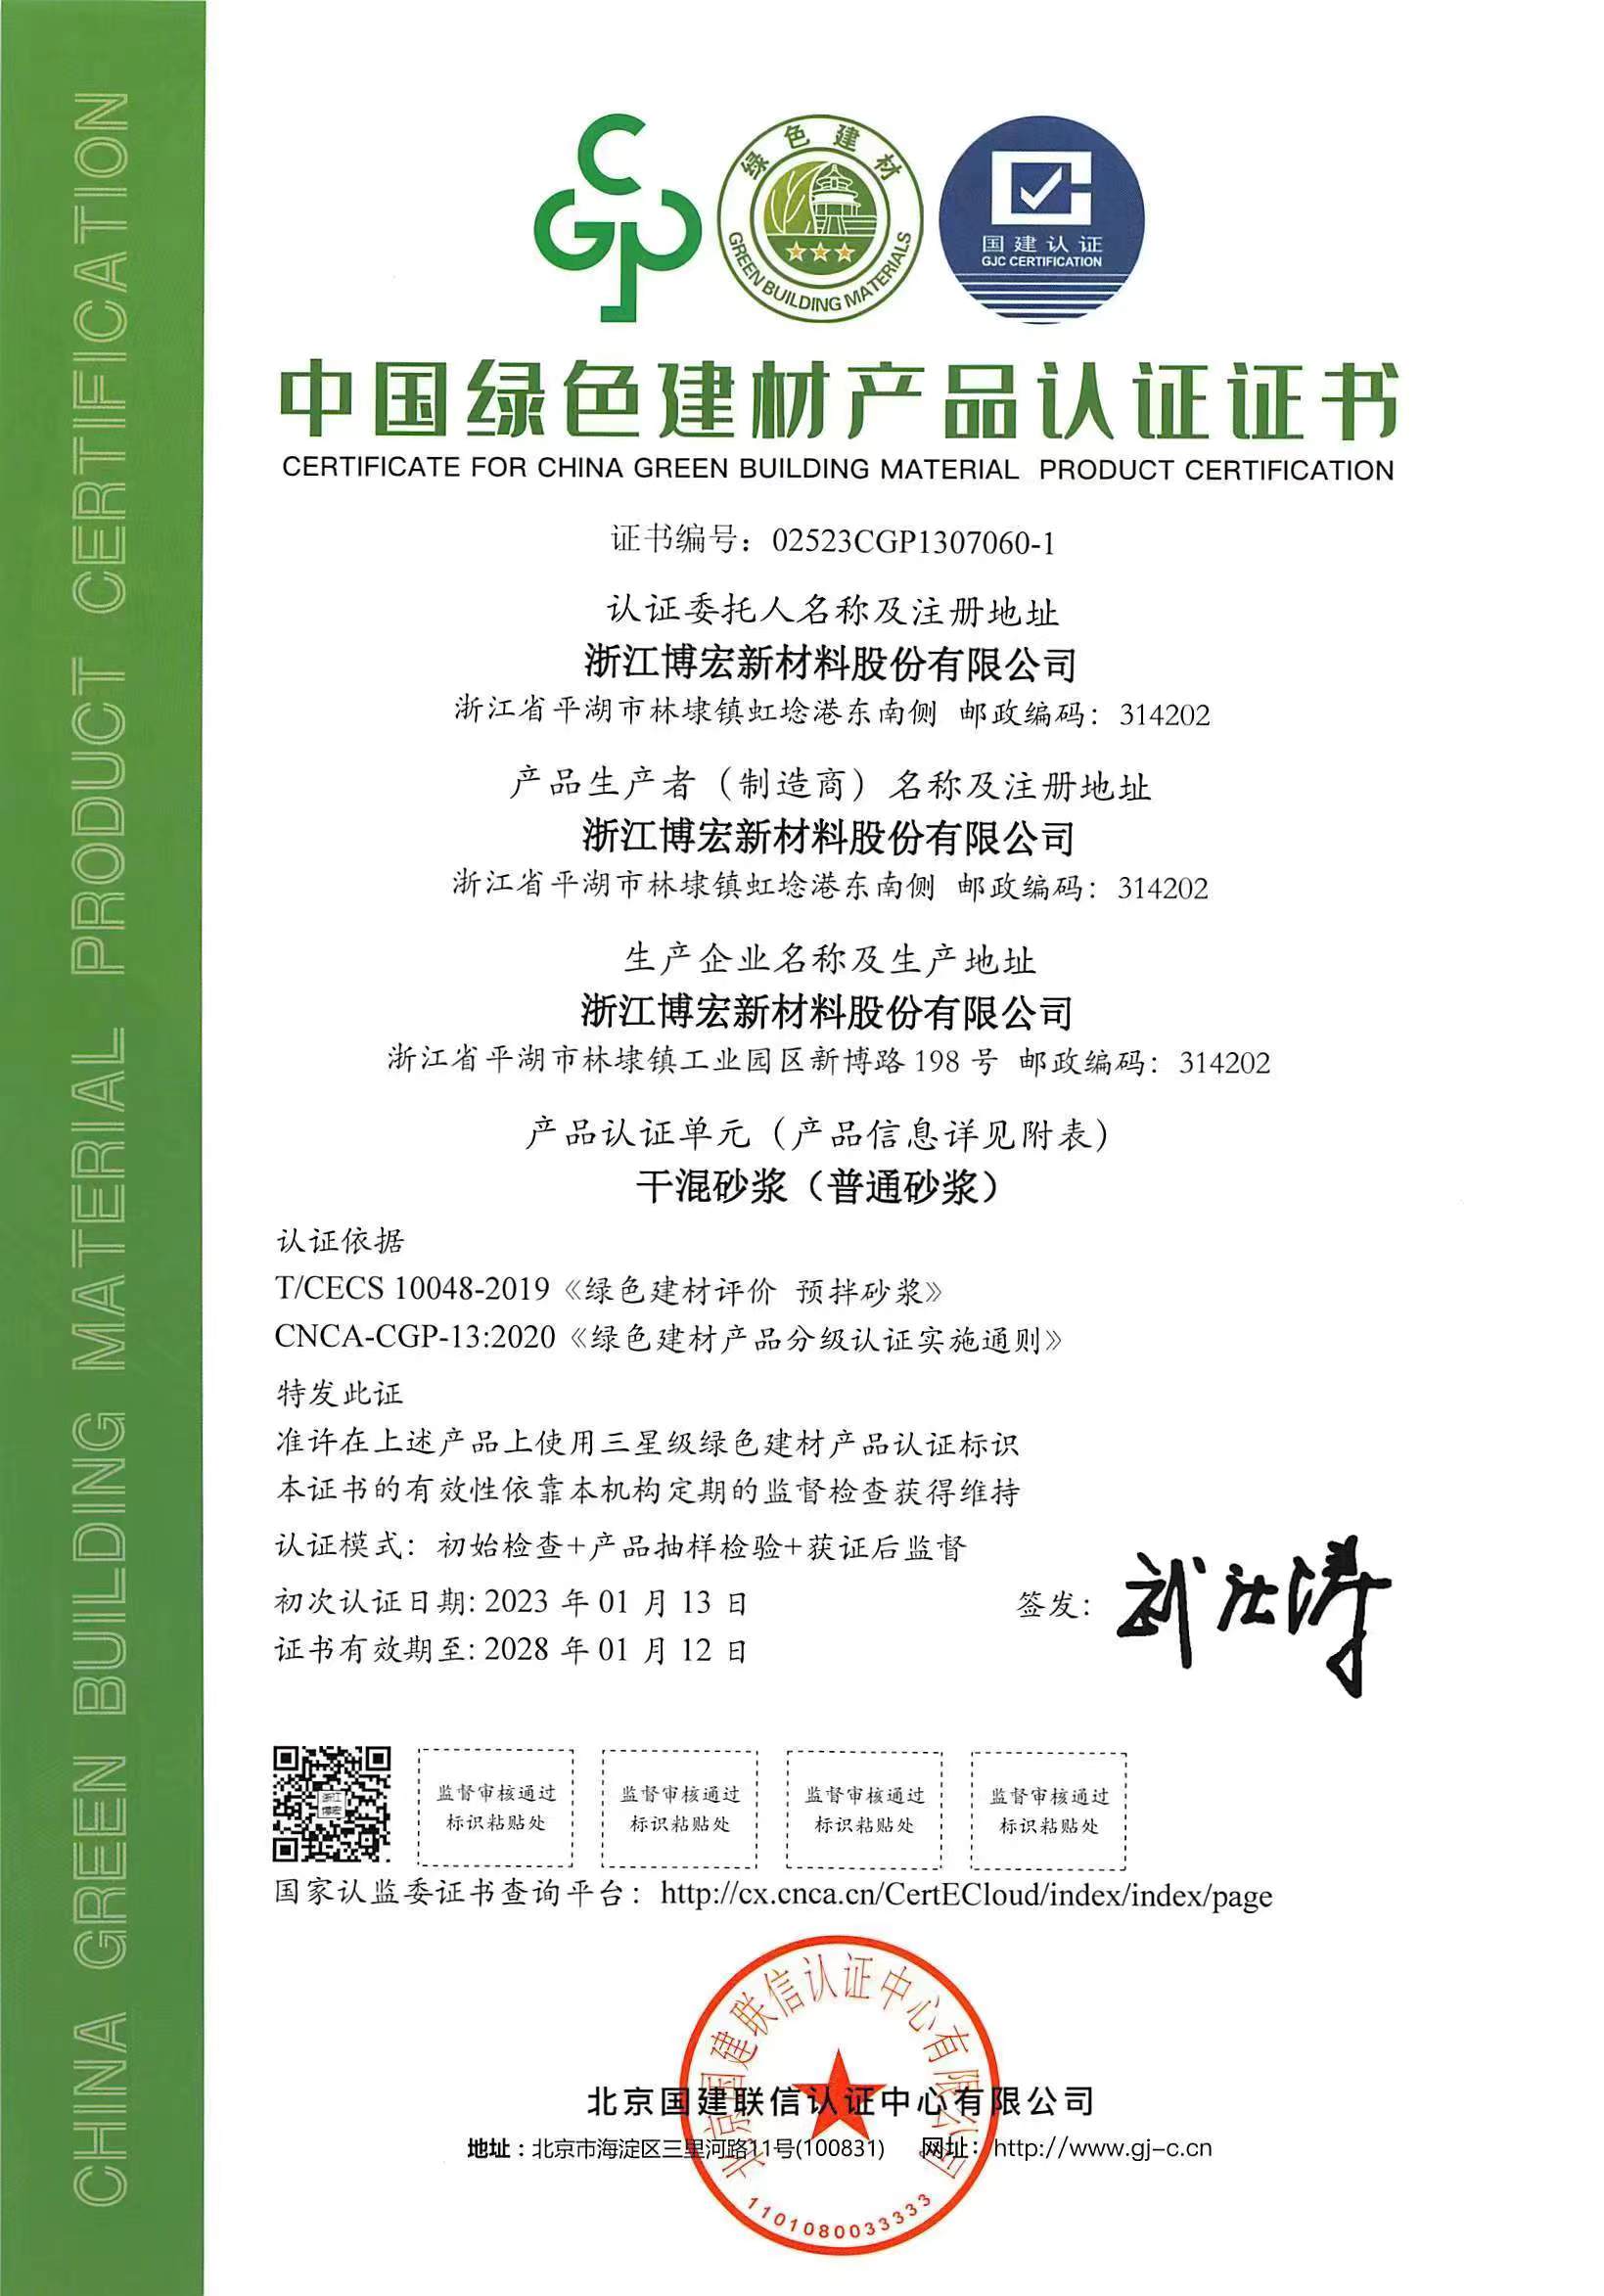 浙江澳门新莆京游戏网站公司干混砂浆产品系列通过中国绿色建材产品三星级认证